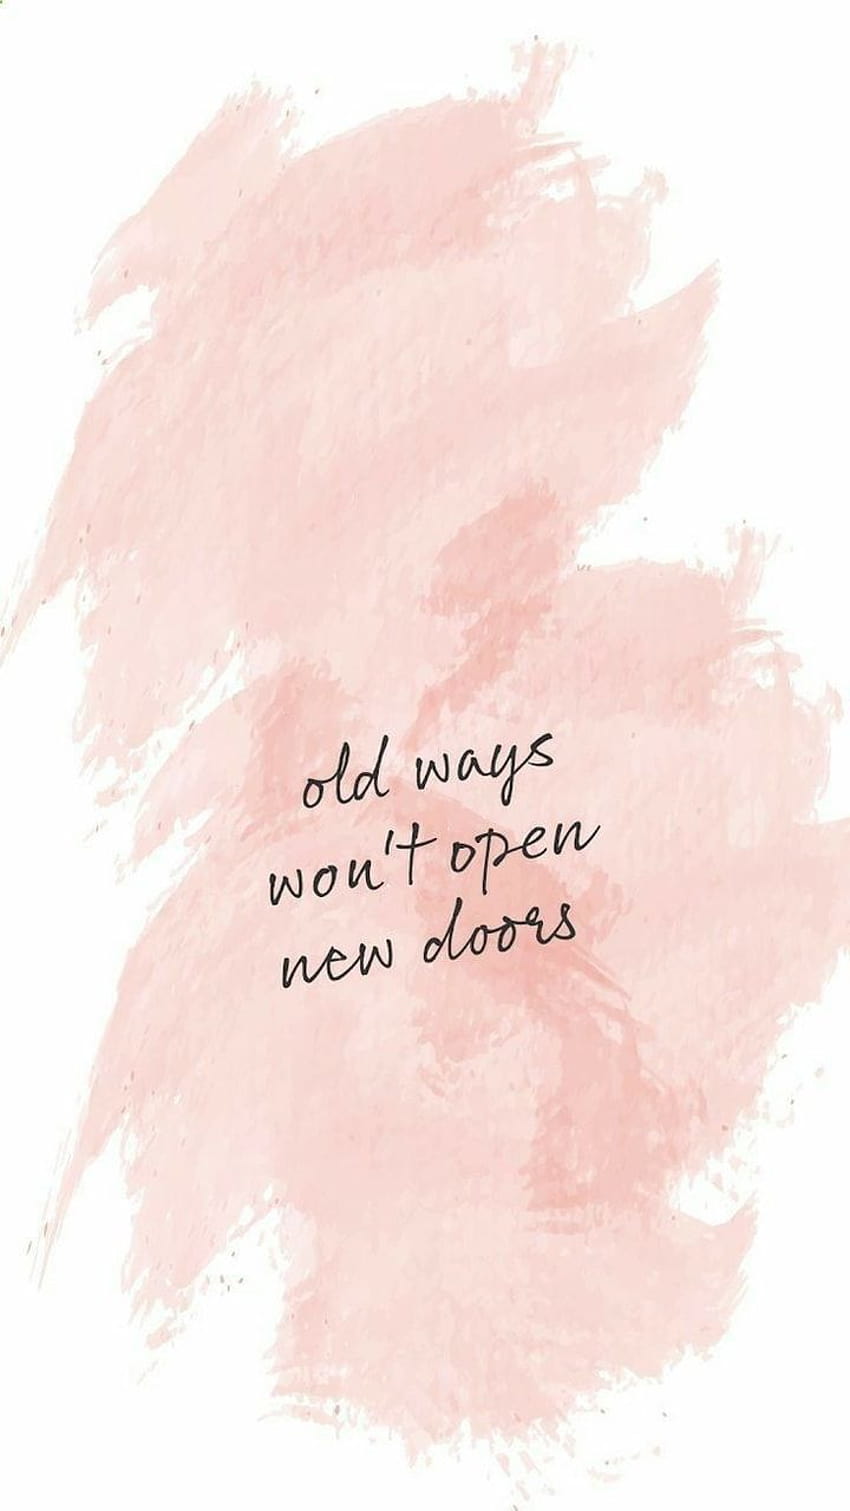 Old ways won't open new doors - Motivational